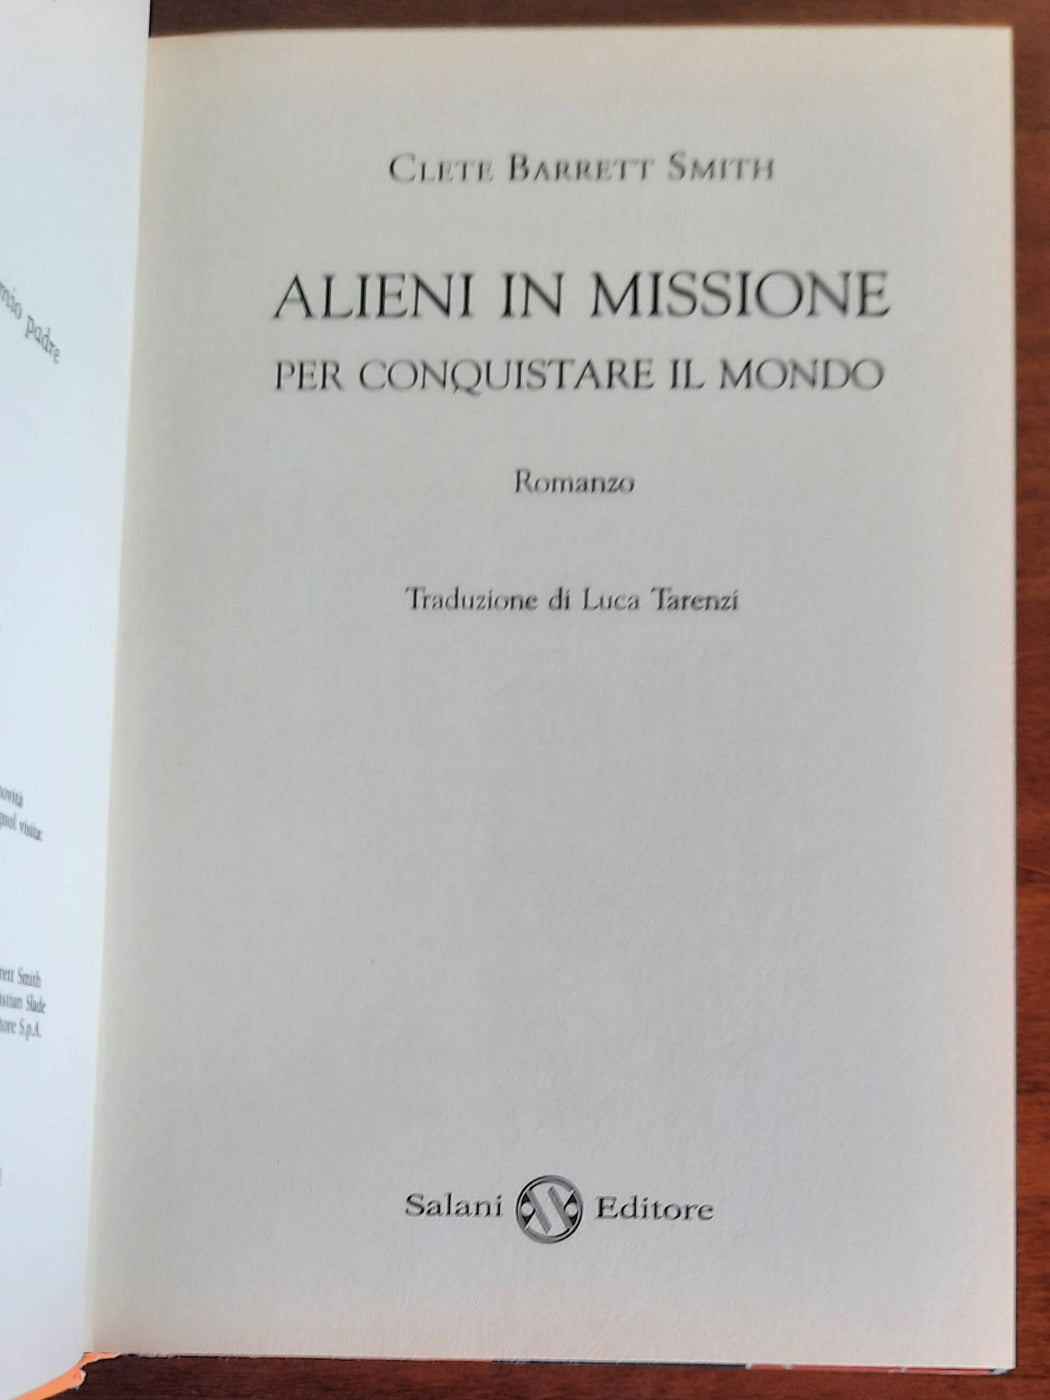 Alieni in missione per conquistare il mondo - Salani Editore - 2013